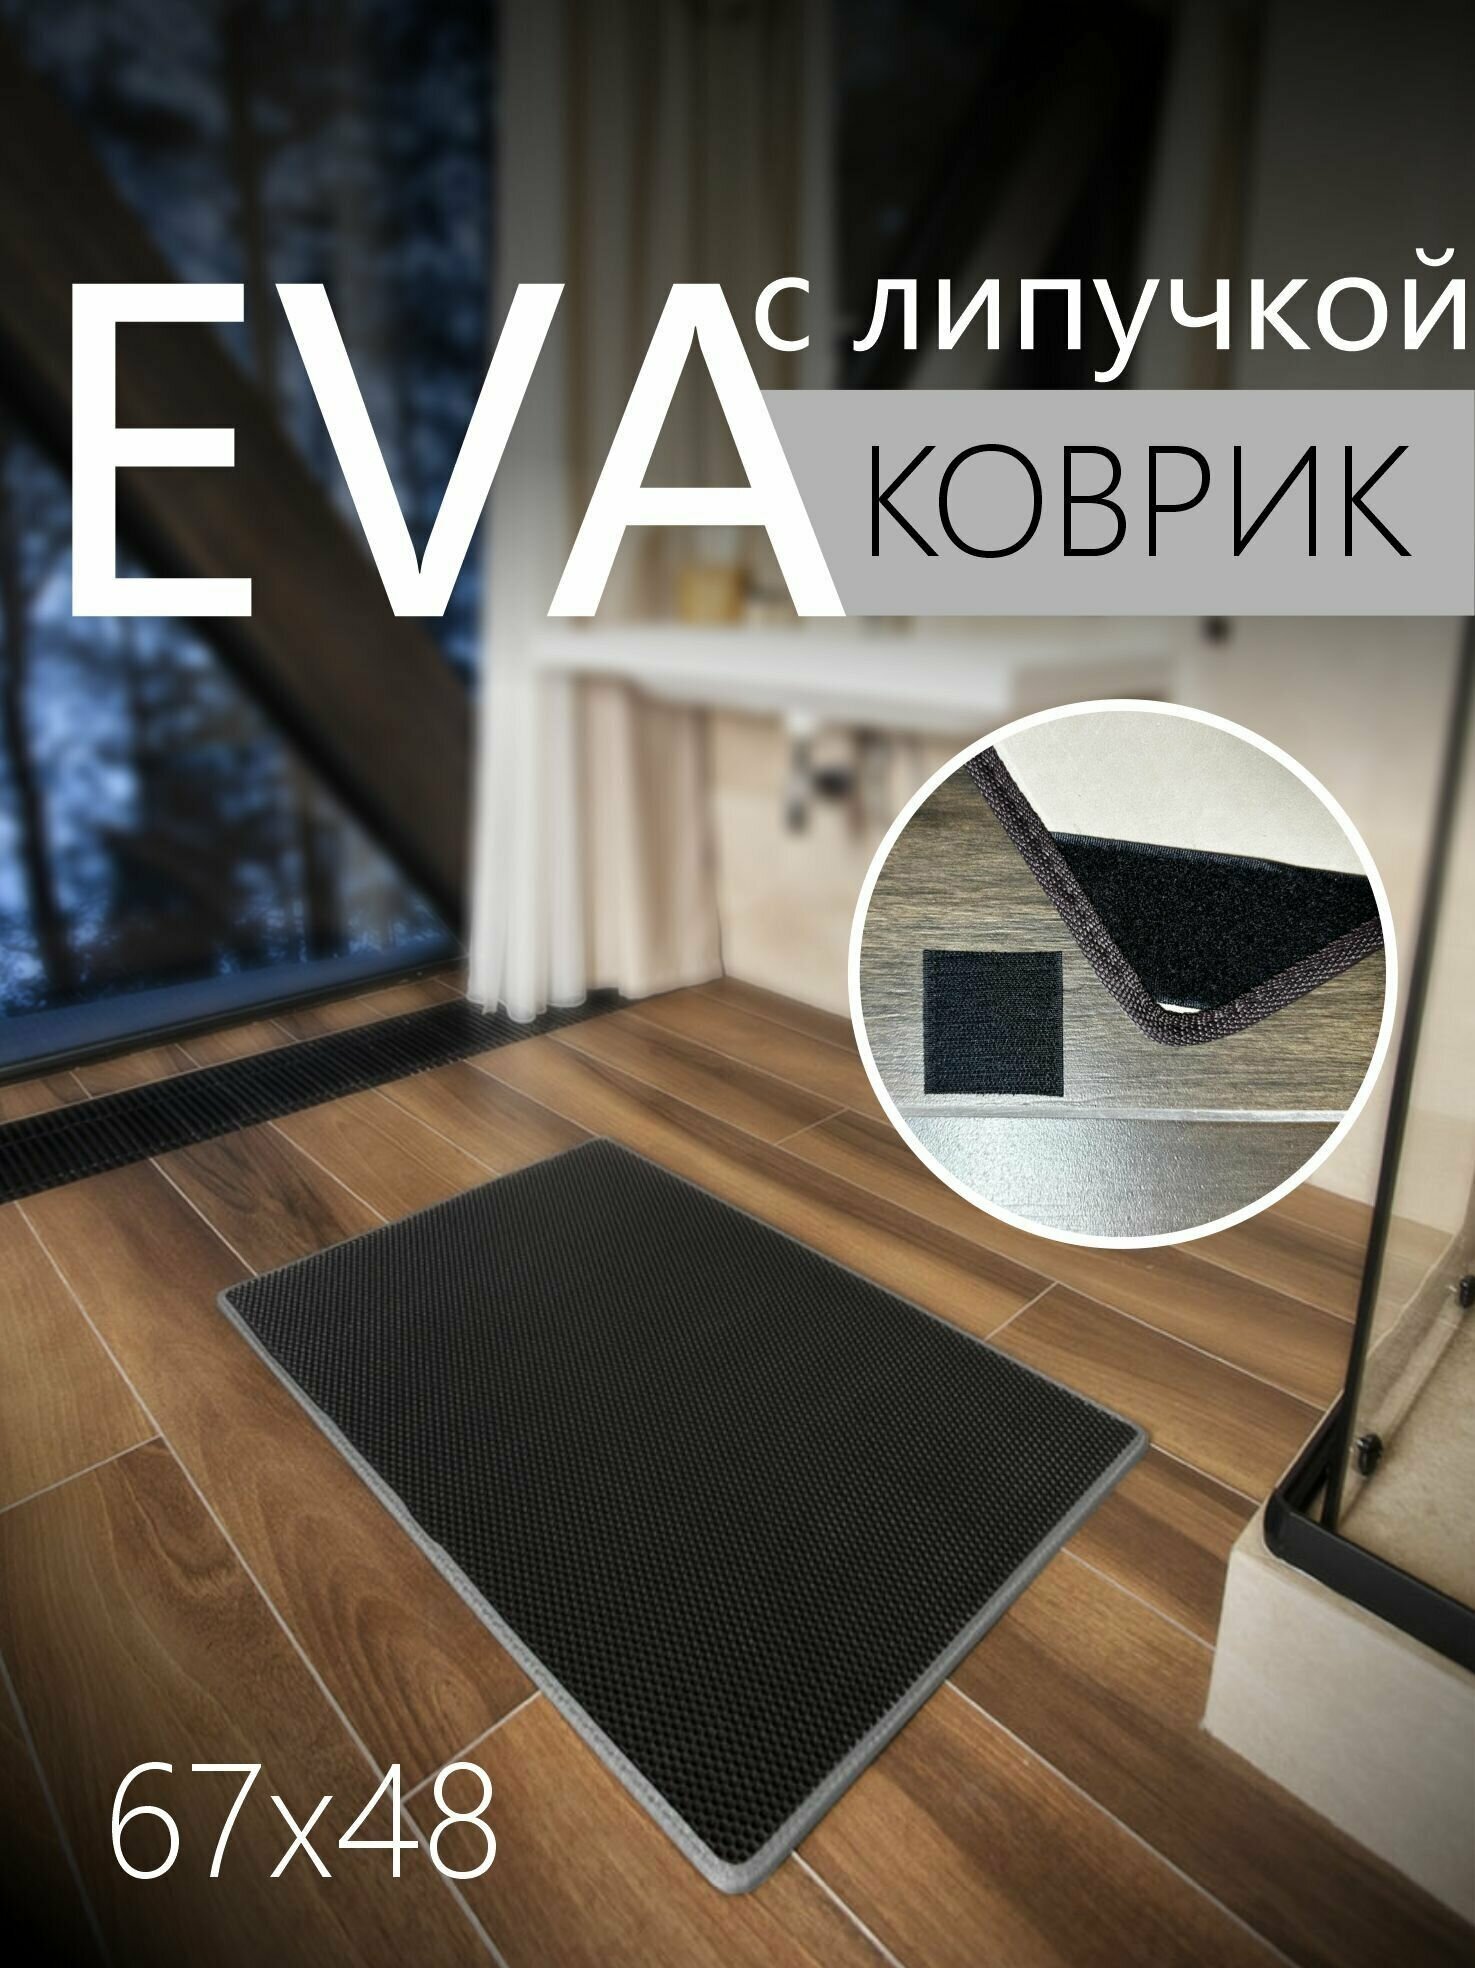 Коврик придверный противоскользящий EVA ЭВА универсальный 67х48 сантиметров. Липучки для фиксации. Соты Черный со светло-серой окантовкой